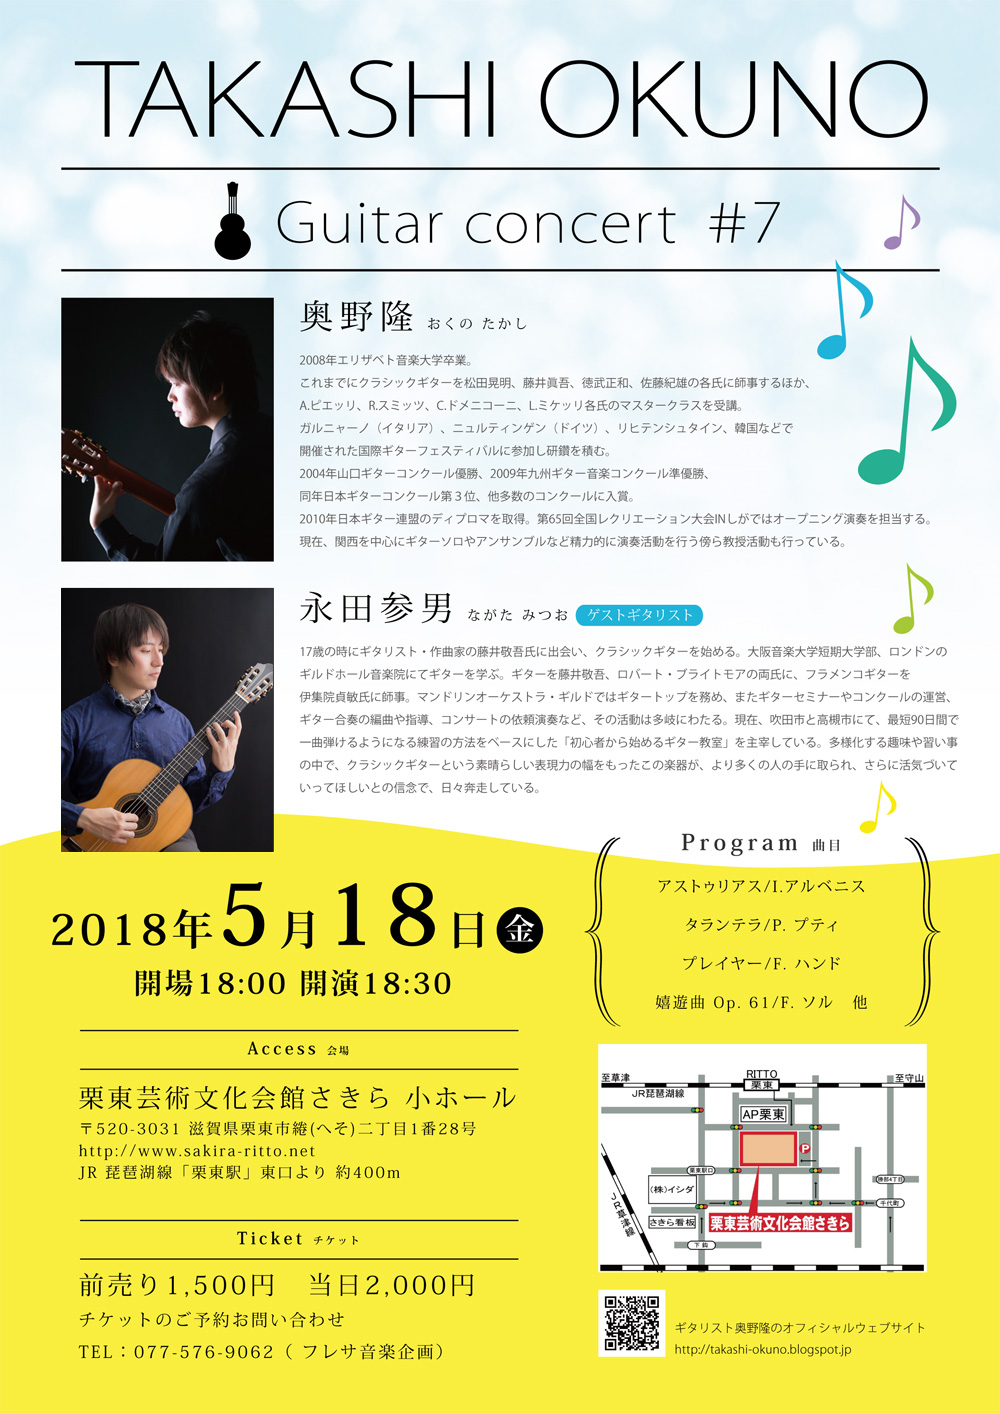 奥野隆コンサート情報 TAKASHI OKUNO Guitar concert #7